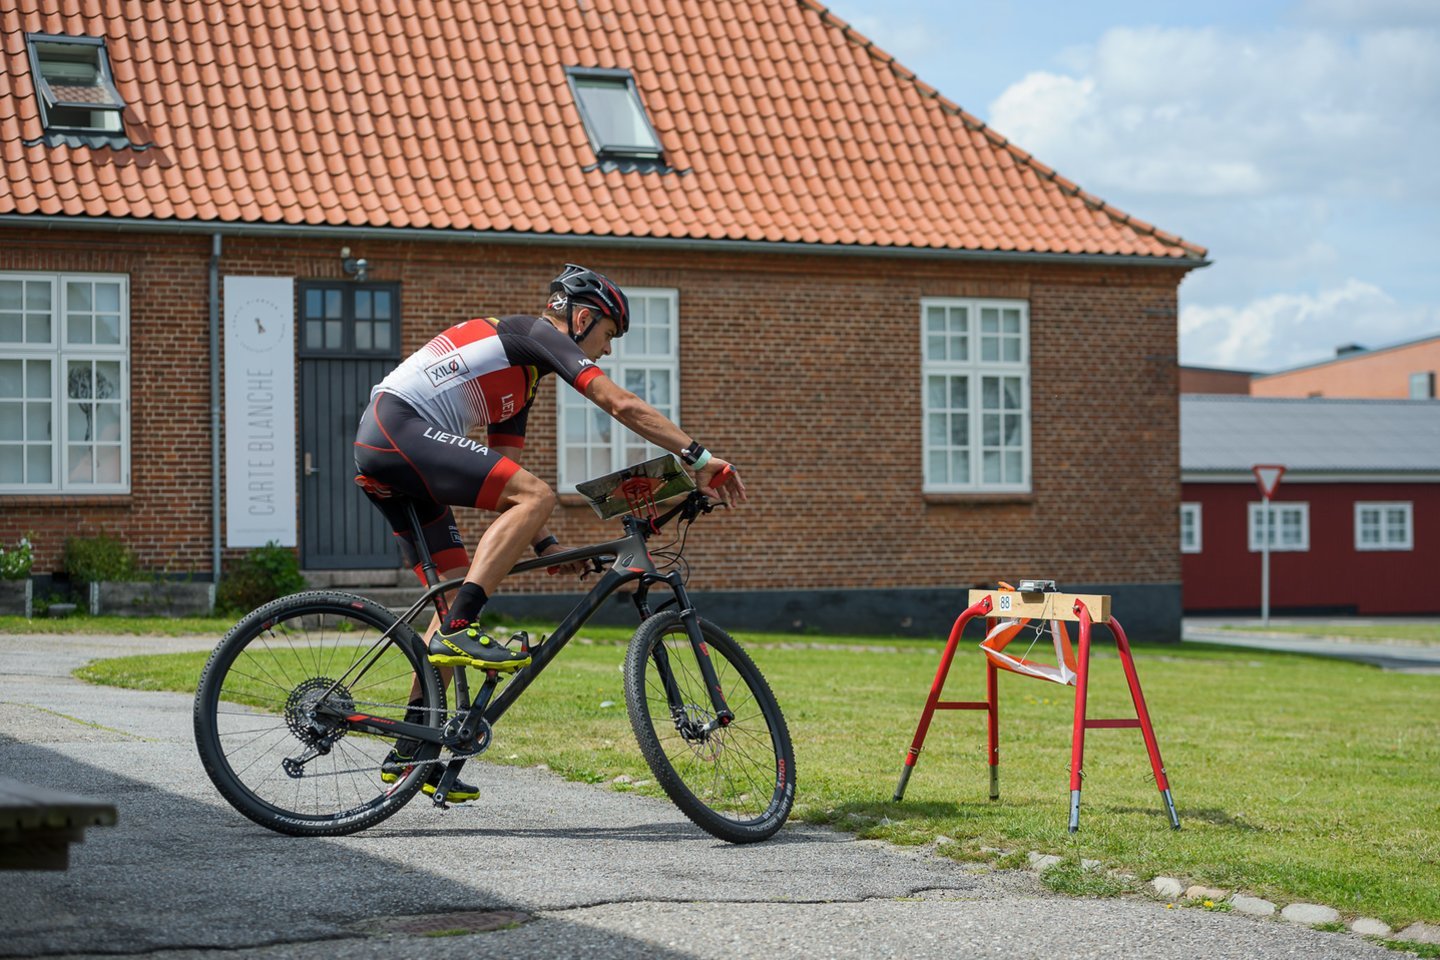  Lietuvos orientacinio sporto atstovai pradeda kovas pasaulio kalnų dviračių čempionate <br> orienteering.lt nuotr.